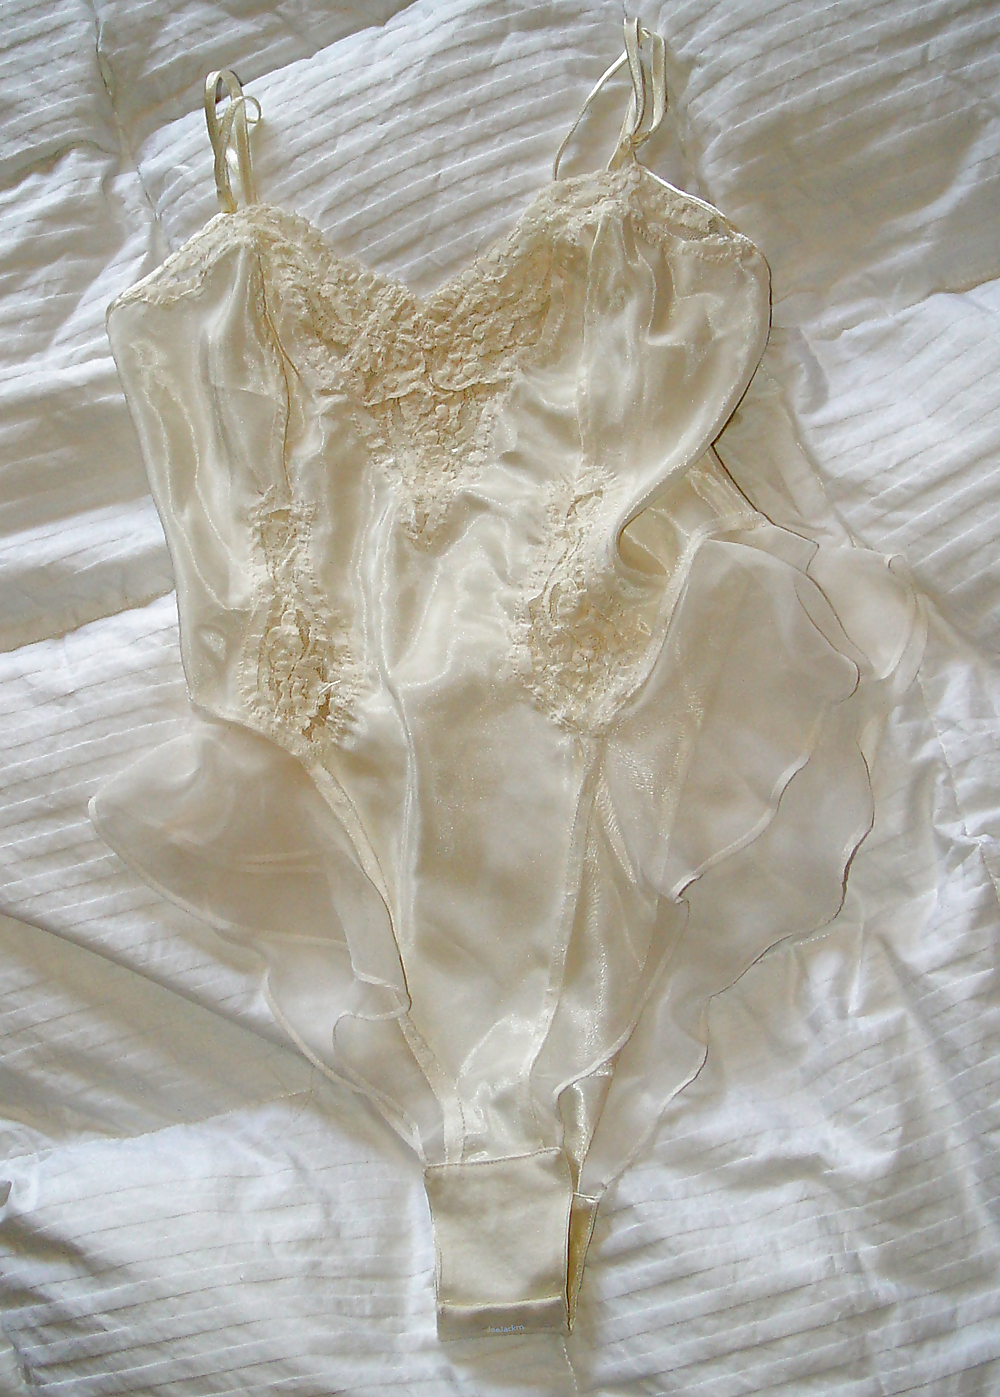 FamFriend's Wife's Underwear & Lingerie #17931567